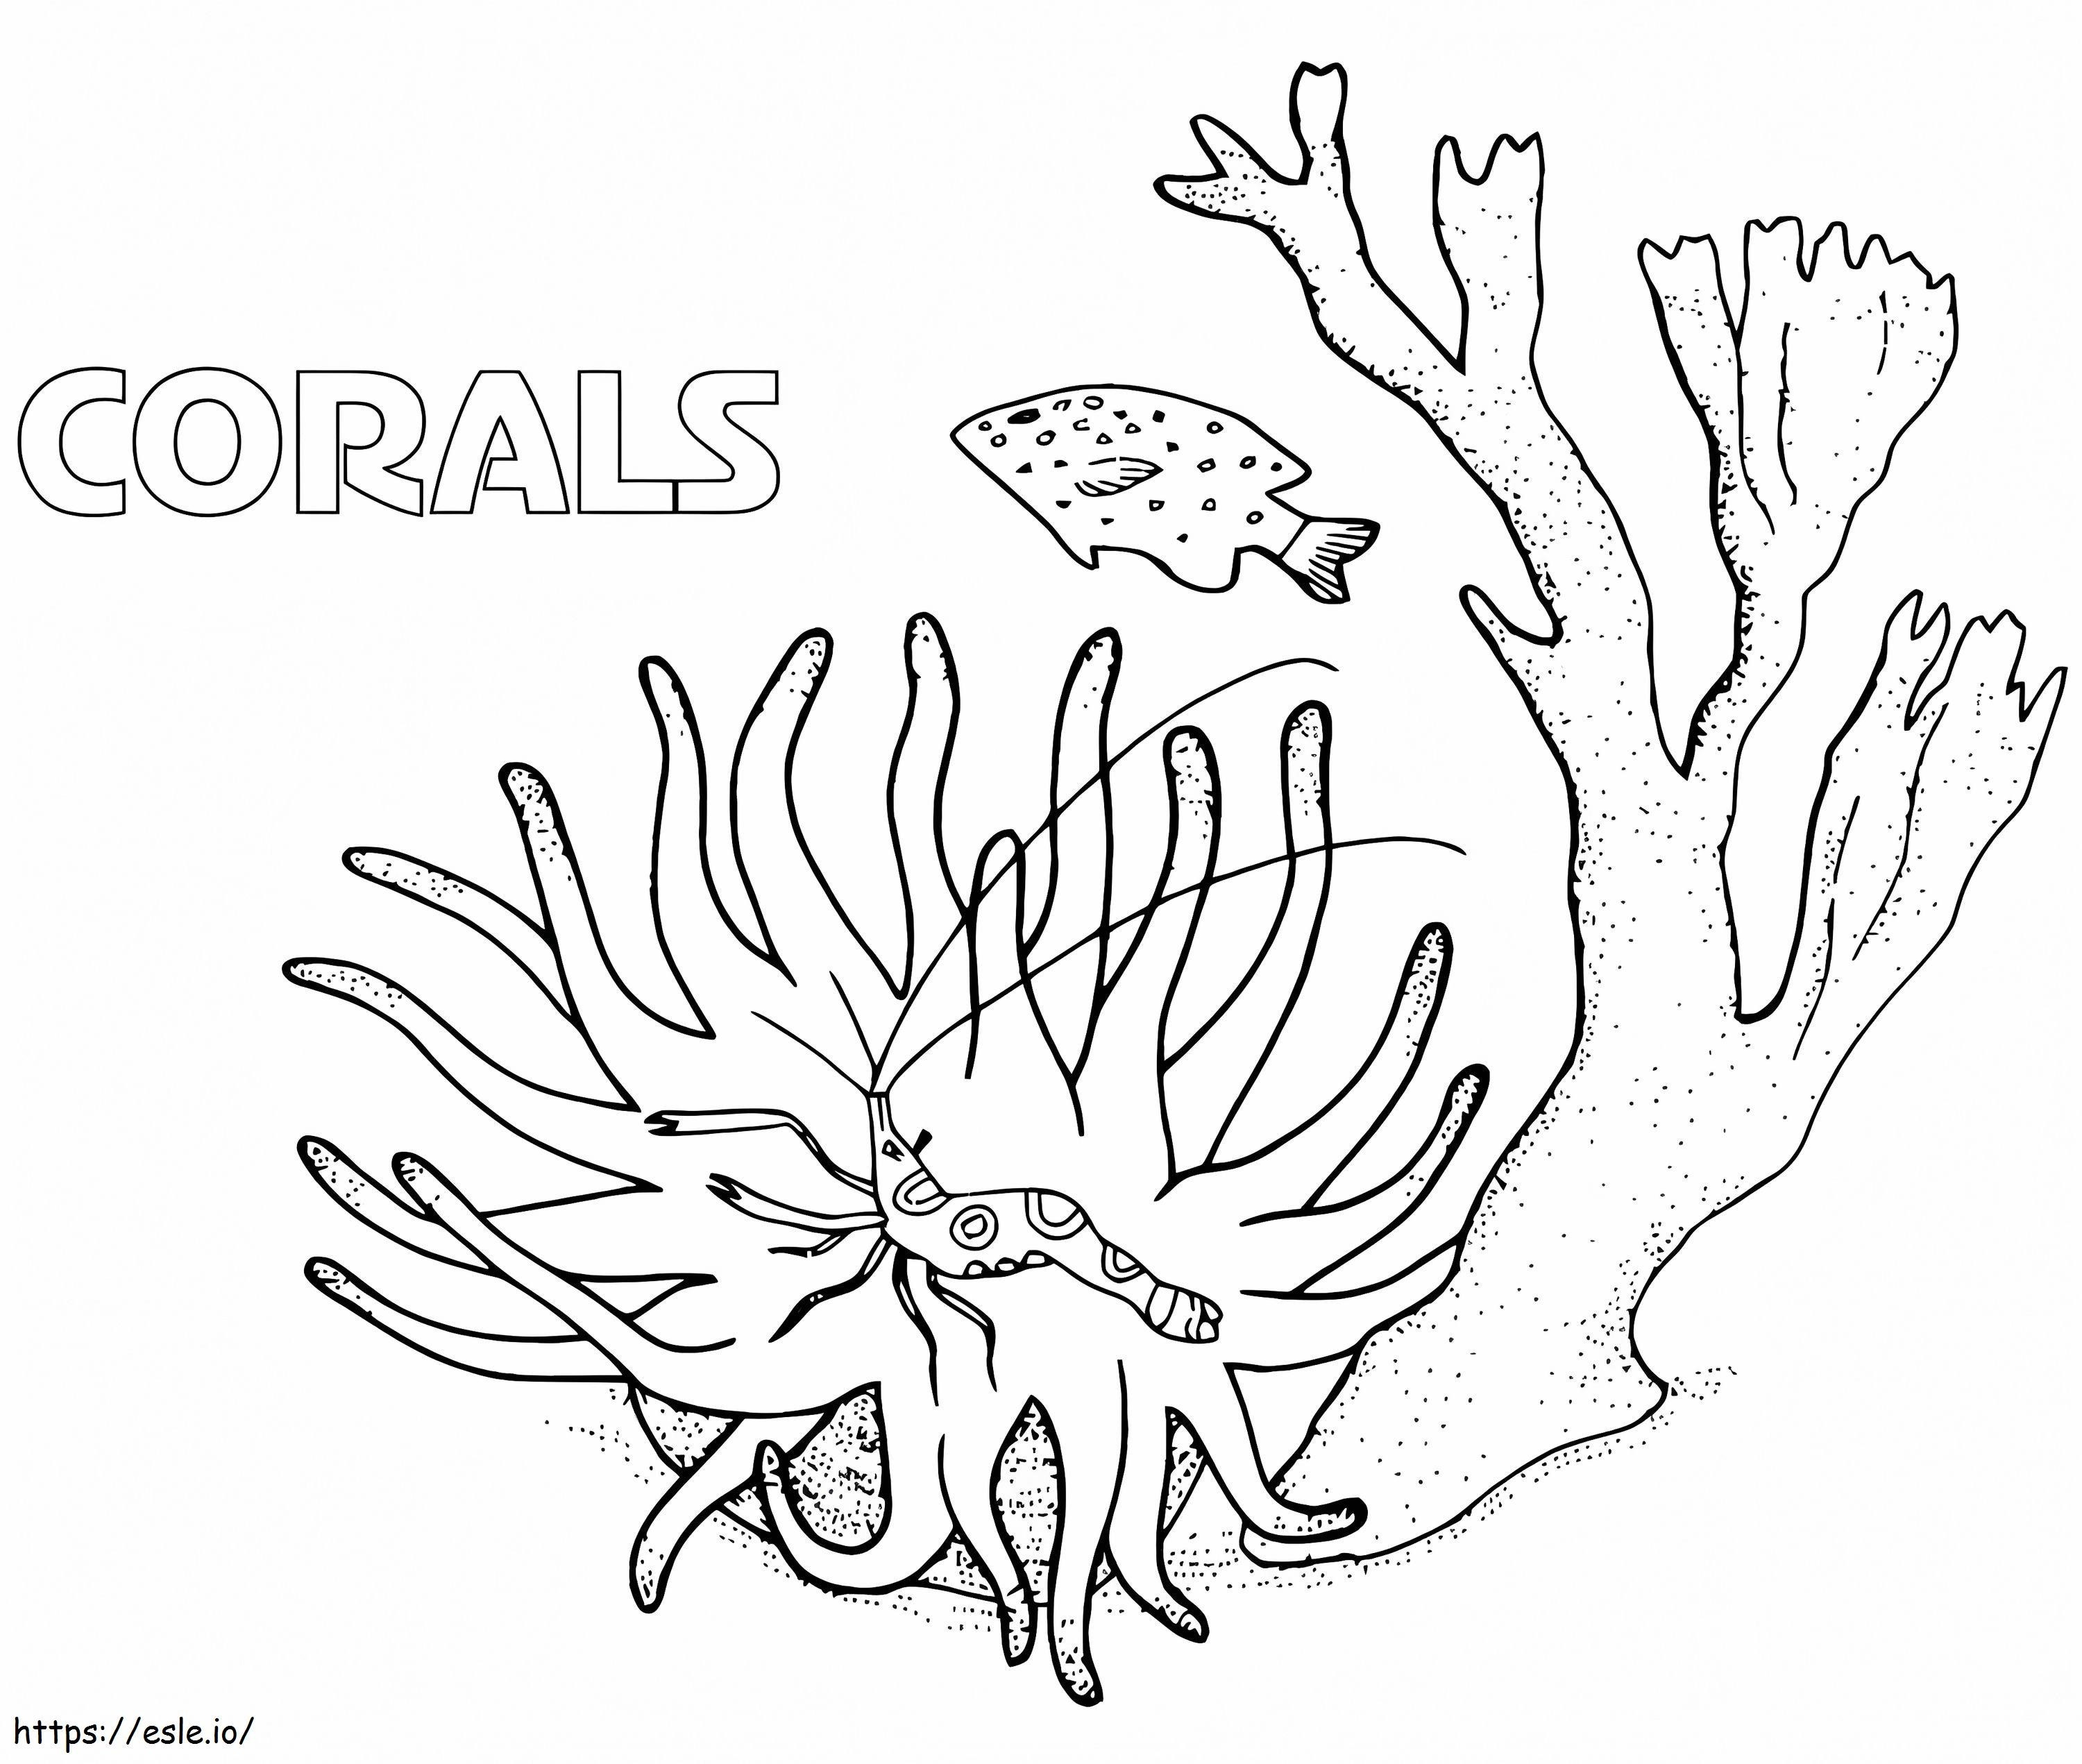 Korallen ausmalbilder